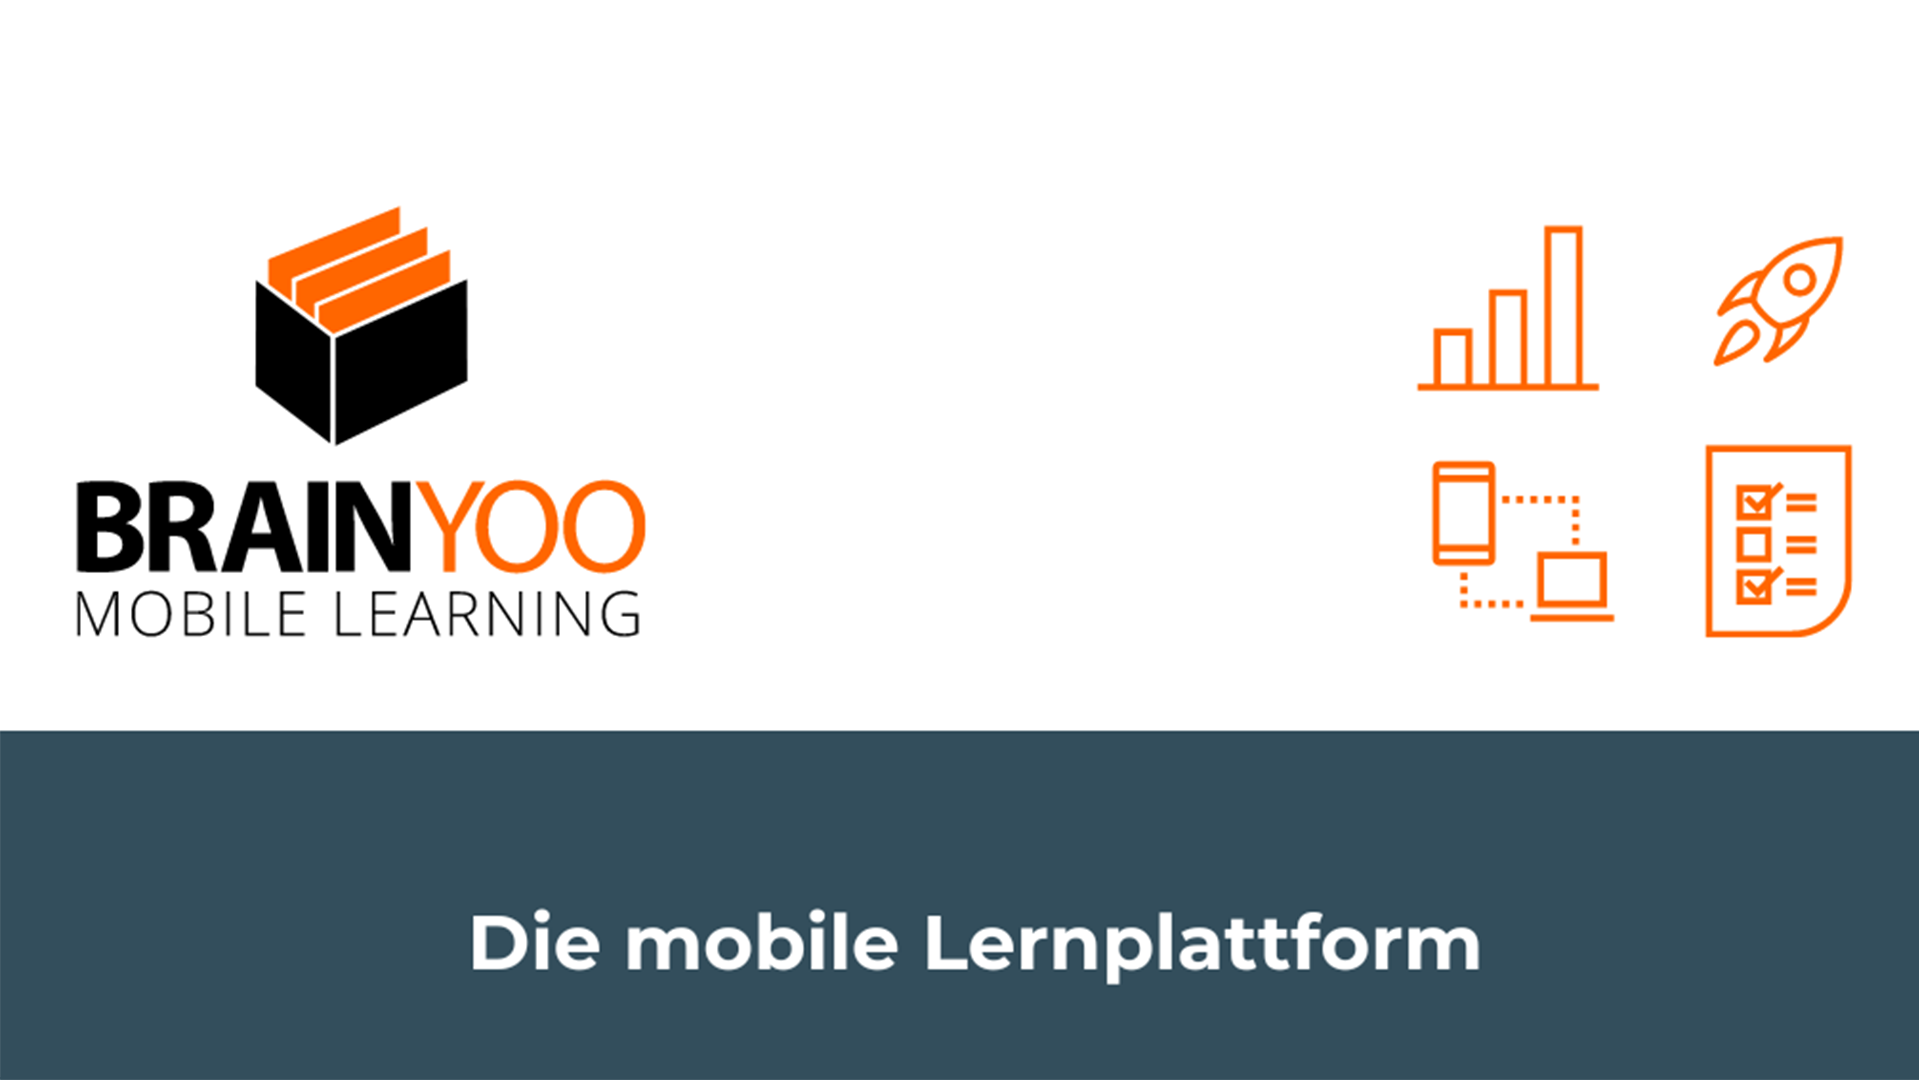 Das Logo von Brainyoo und der Schriftzug "Die mobile Lerrnplattform".